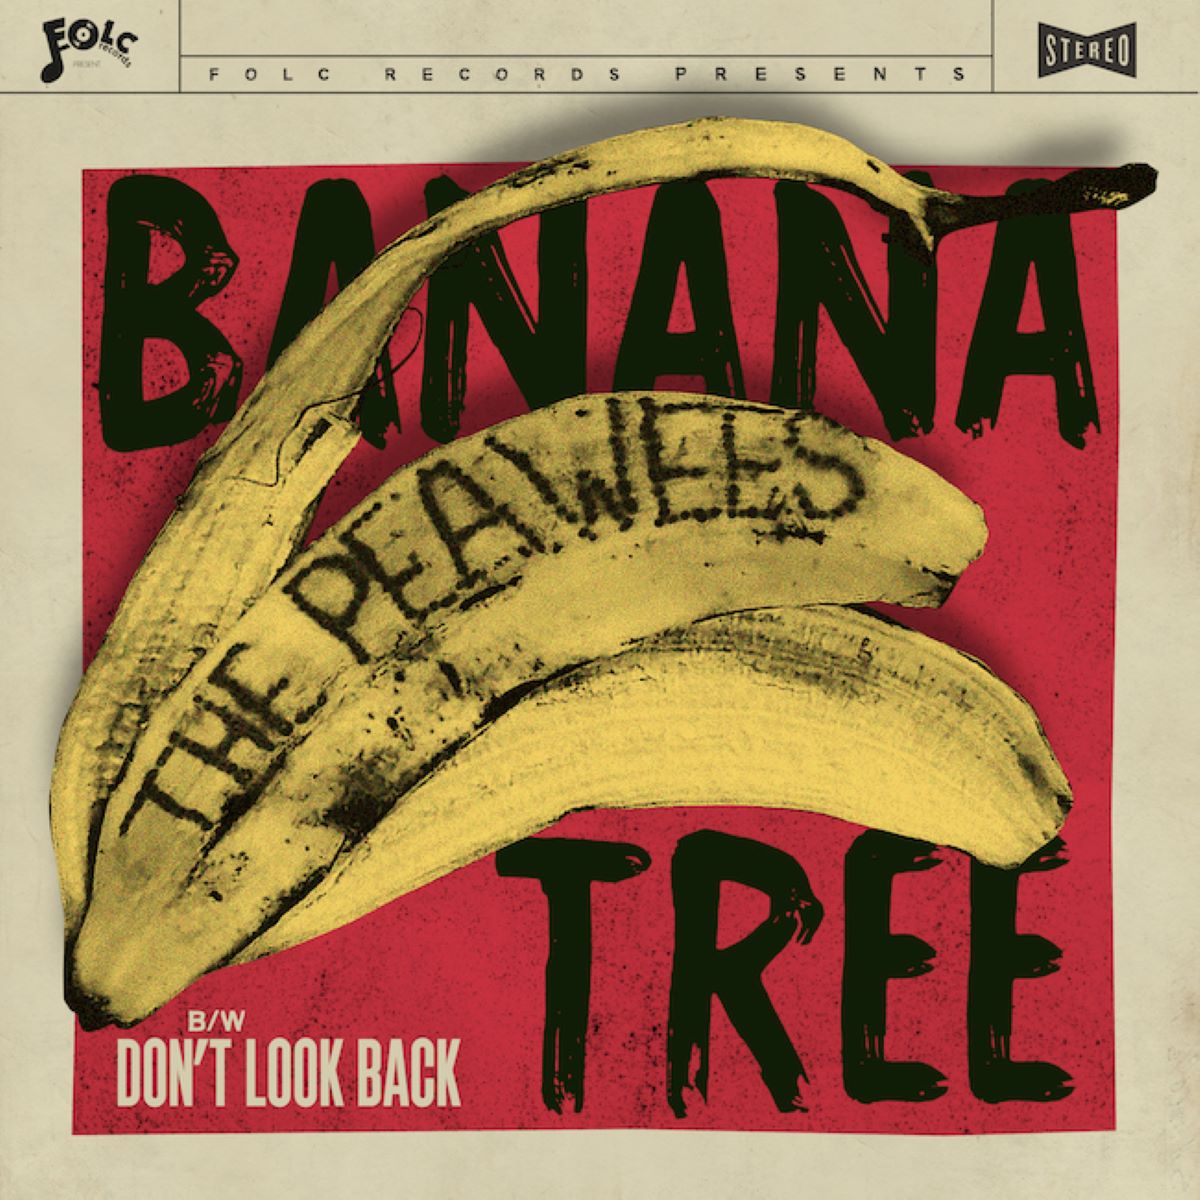 Tornano i Peawees con il singolo “Banana Tree” e un nuovo album